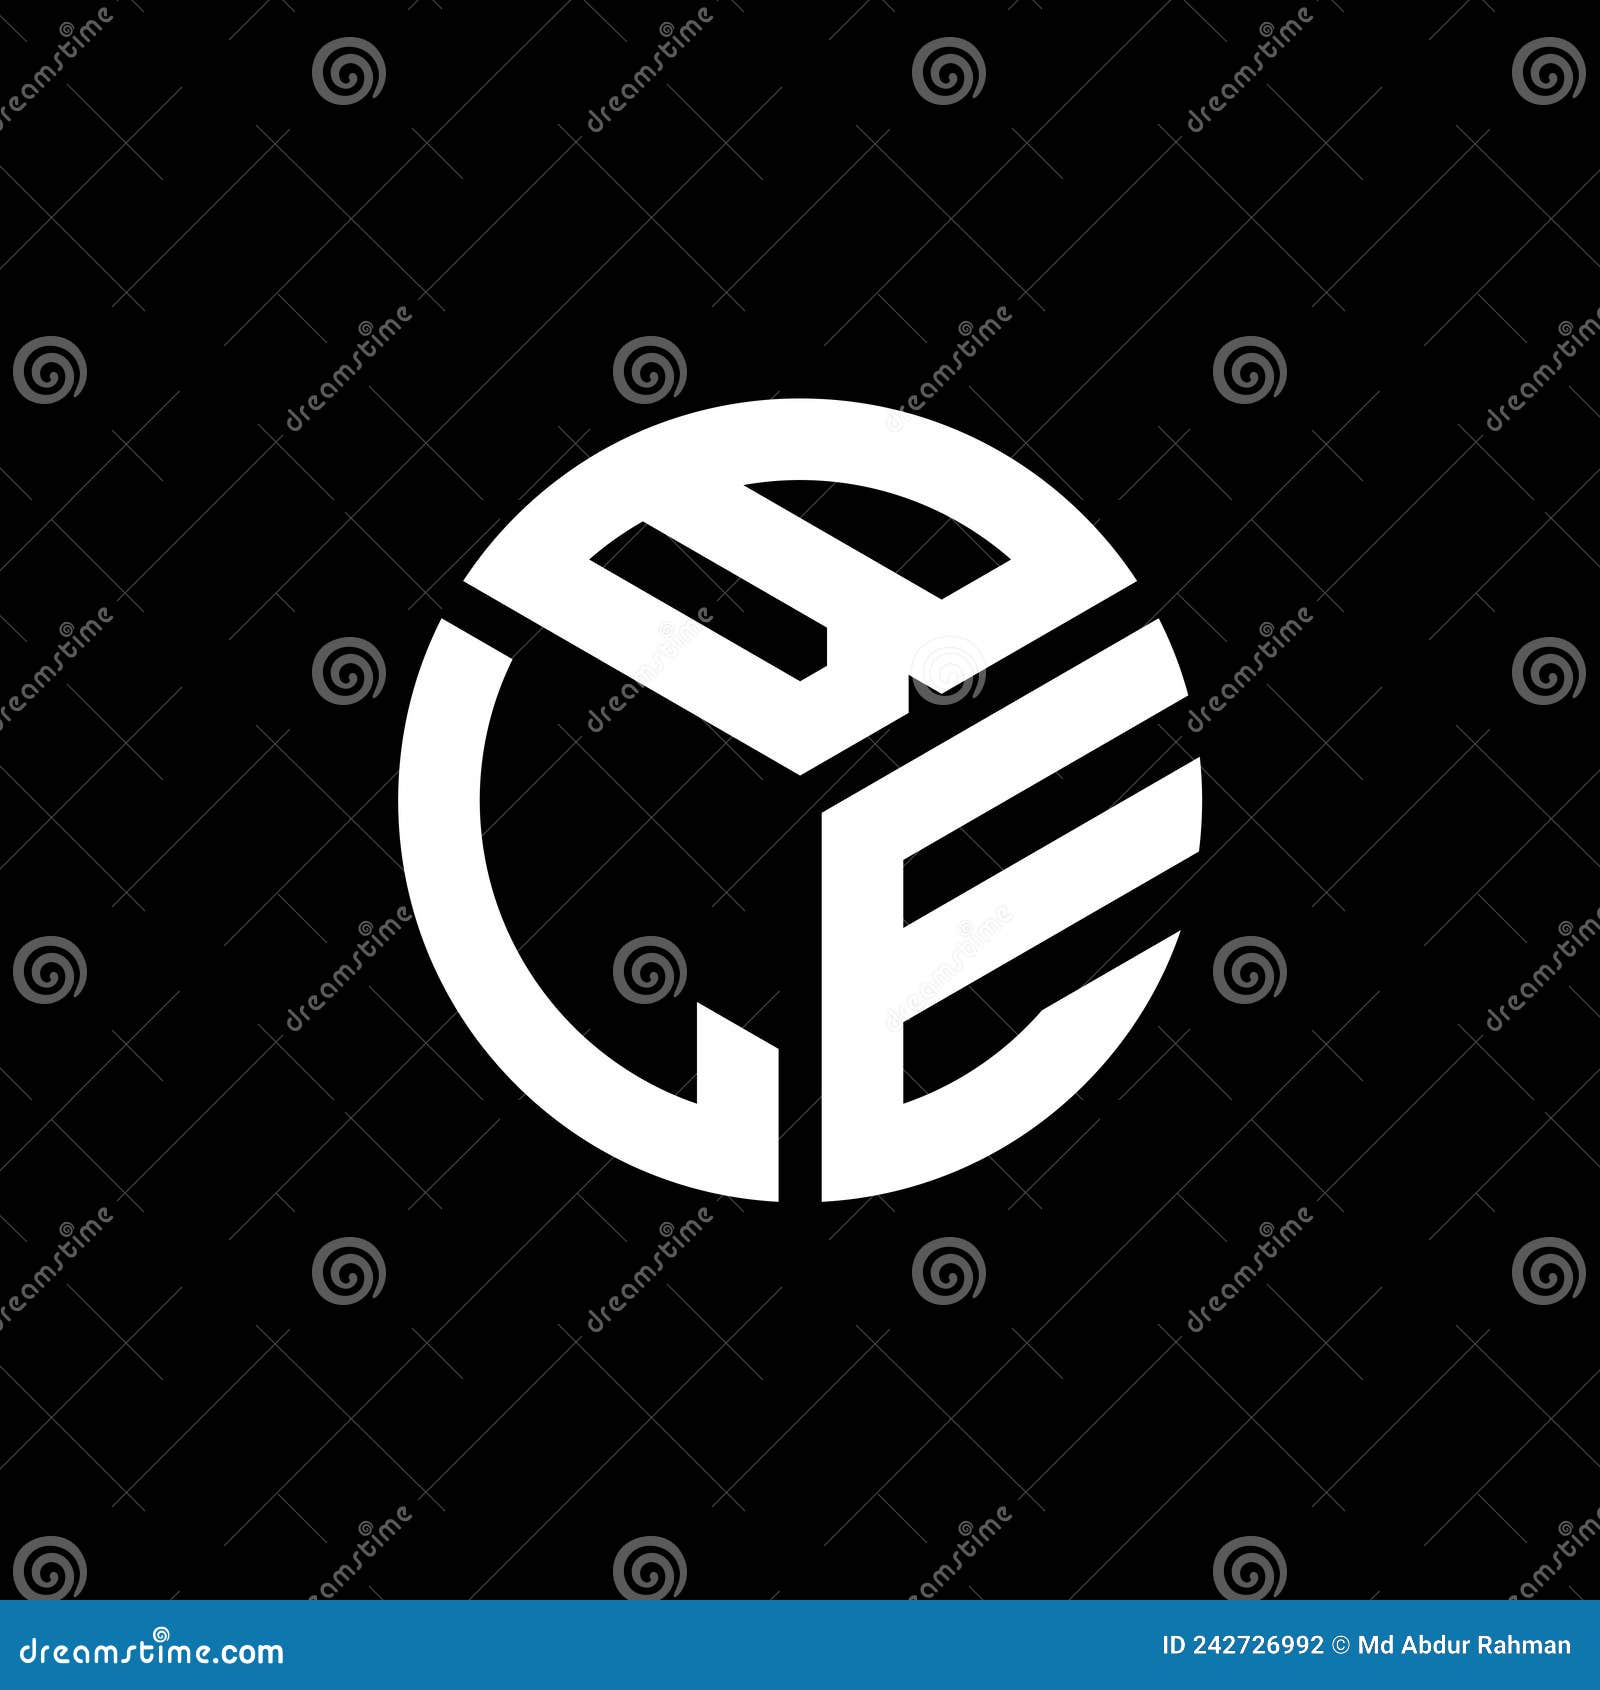 ble letter logo  on black background. ble creative initials letter logo concept. ble letter 